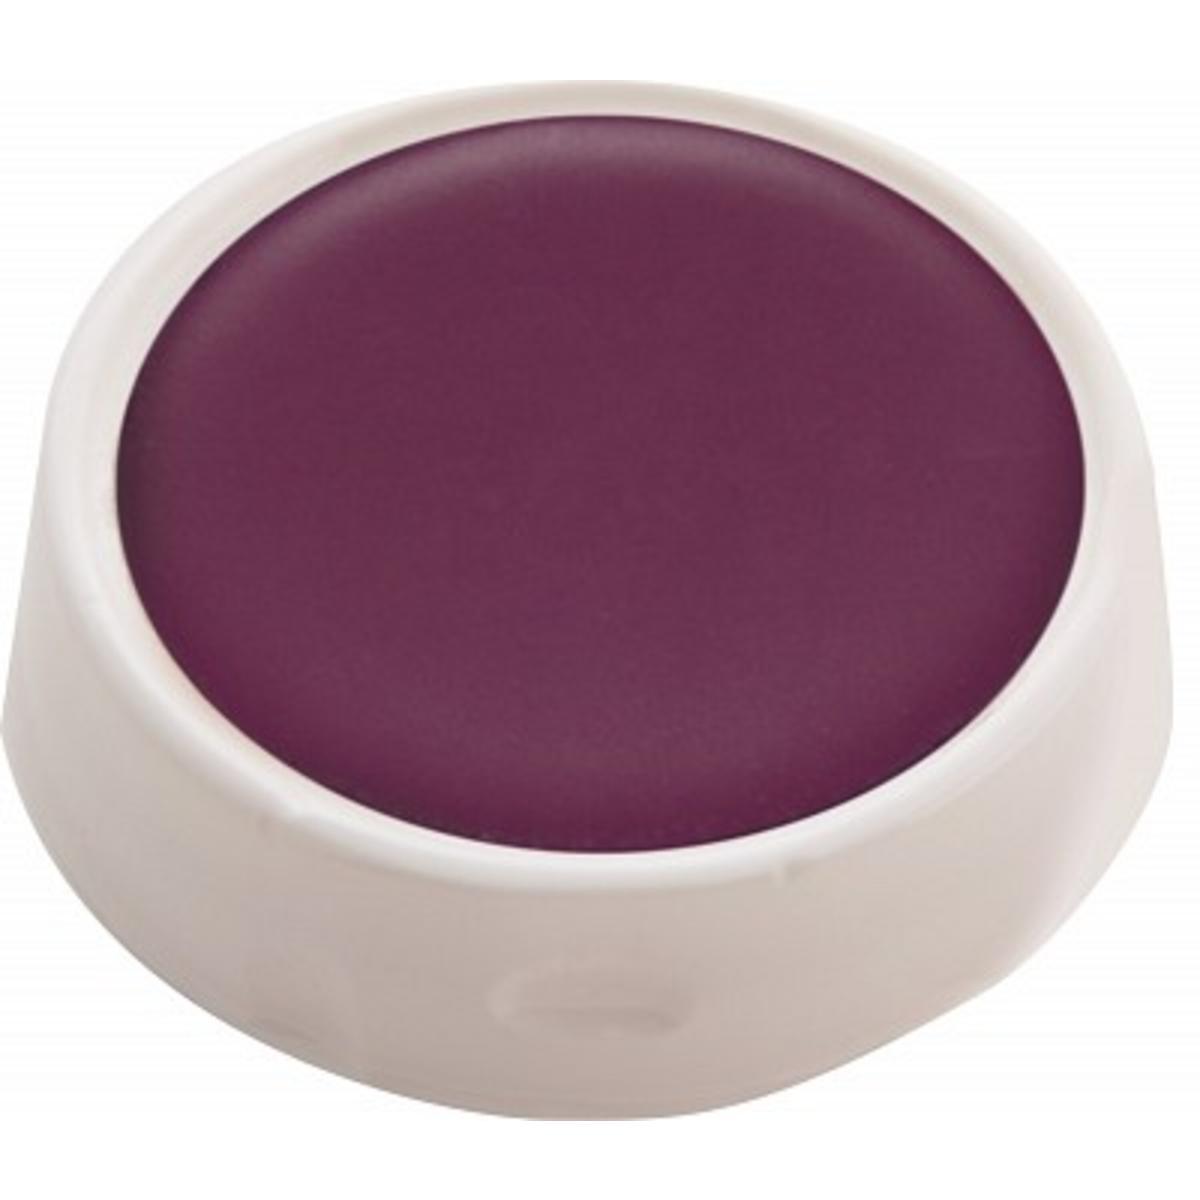 Palette ronde en fard gras - 6,5 x 6,5 cm - Violet